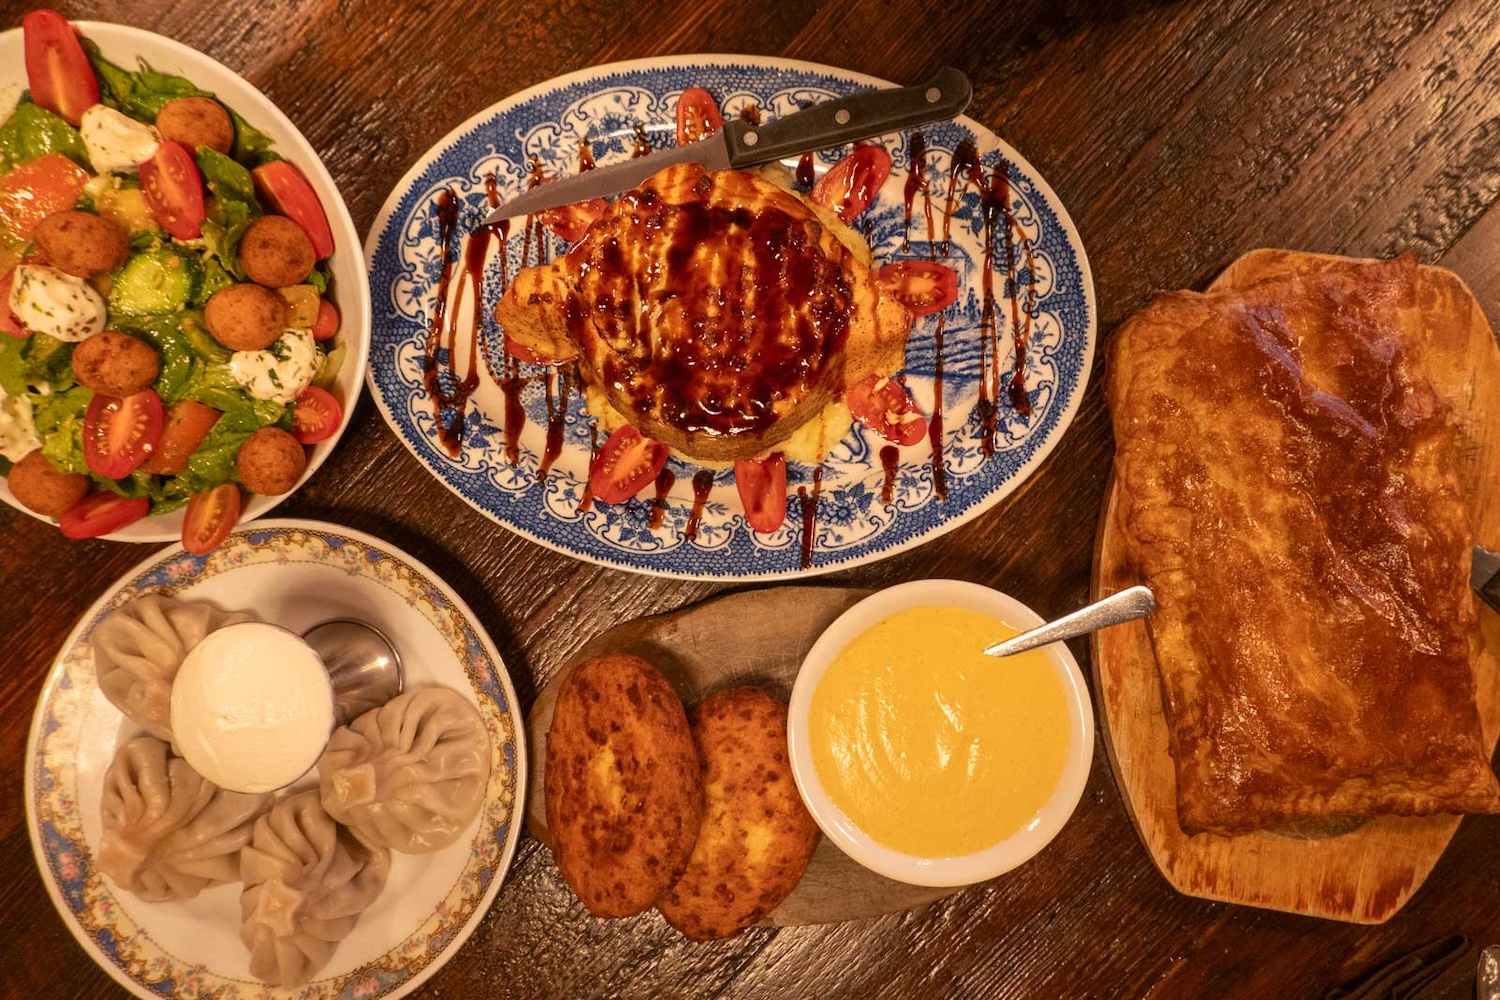 قدم Oda House الطعام الجورجي إلى مانهاتن قبل عقد من الزمن.  The House Special عبارة عن طبق سلمون مخبوز غني بالكريمة الحامضة والجبن مع رذاذ البلسميك.